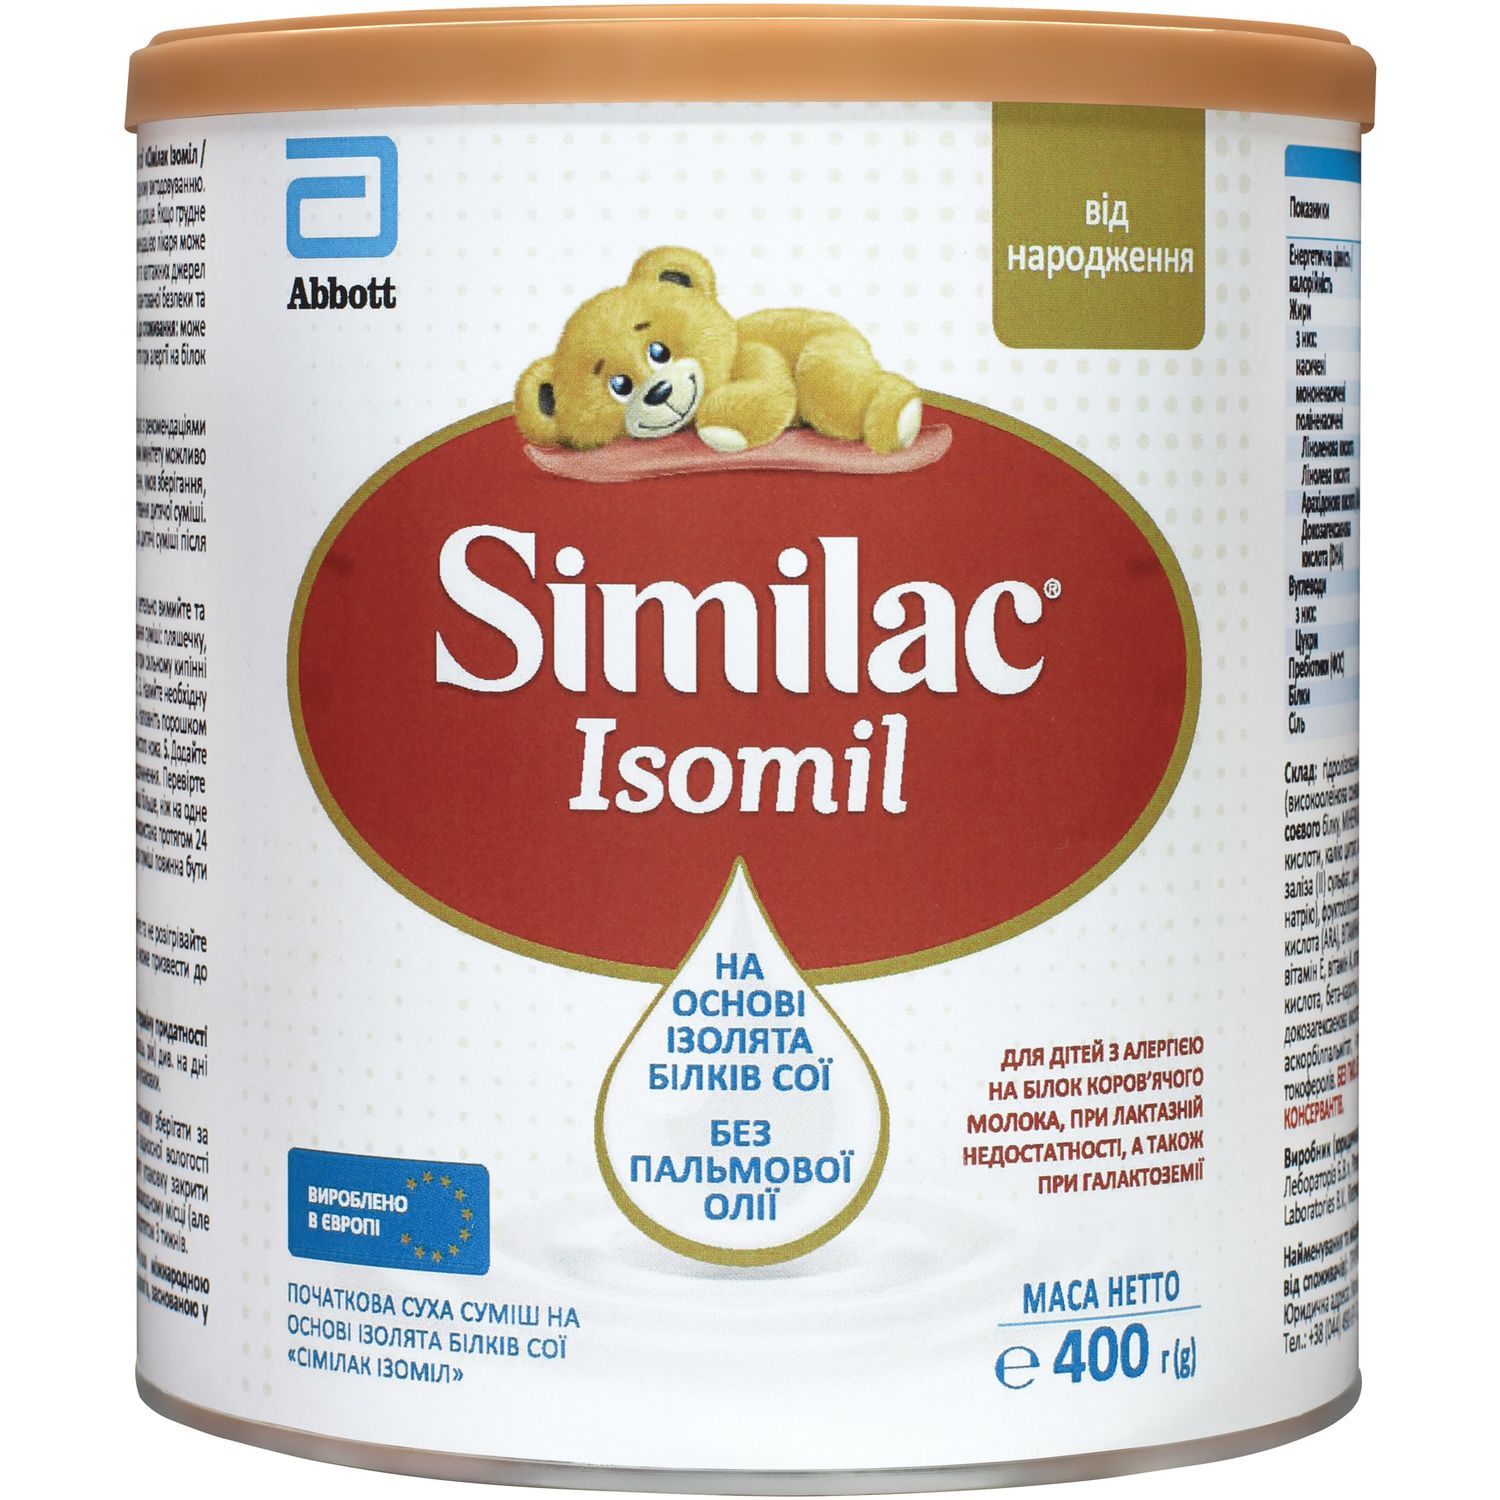 Суха молочна суміш Similac Ізоміл, 400 г - фото 1